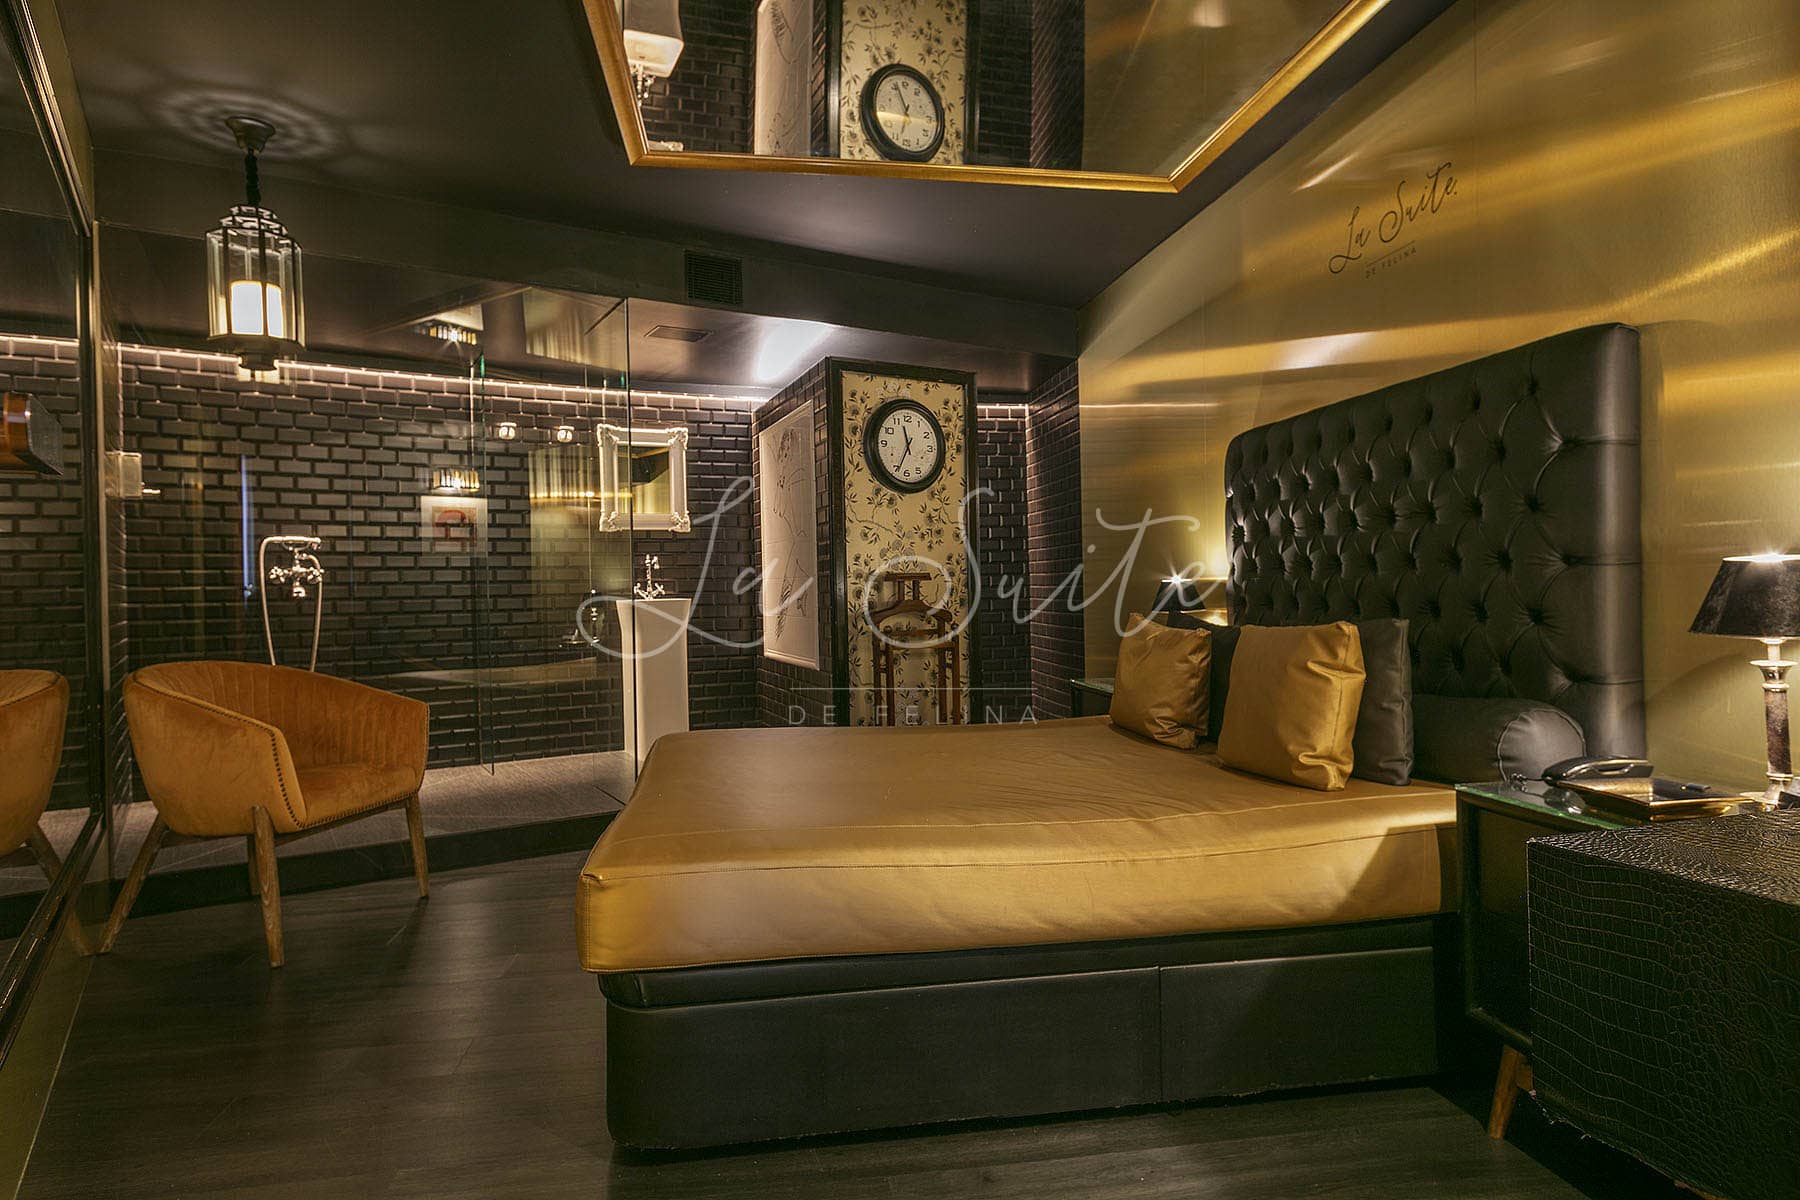 Chambre de luxe, murs noirs et dorés, finitions en bois et mobilier luxueux de couleur dorée à La Suite, Barcelone.